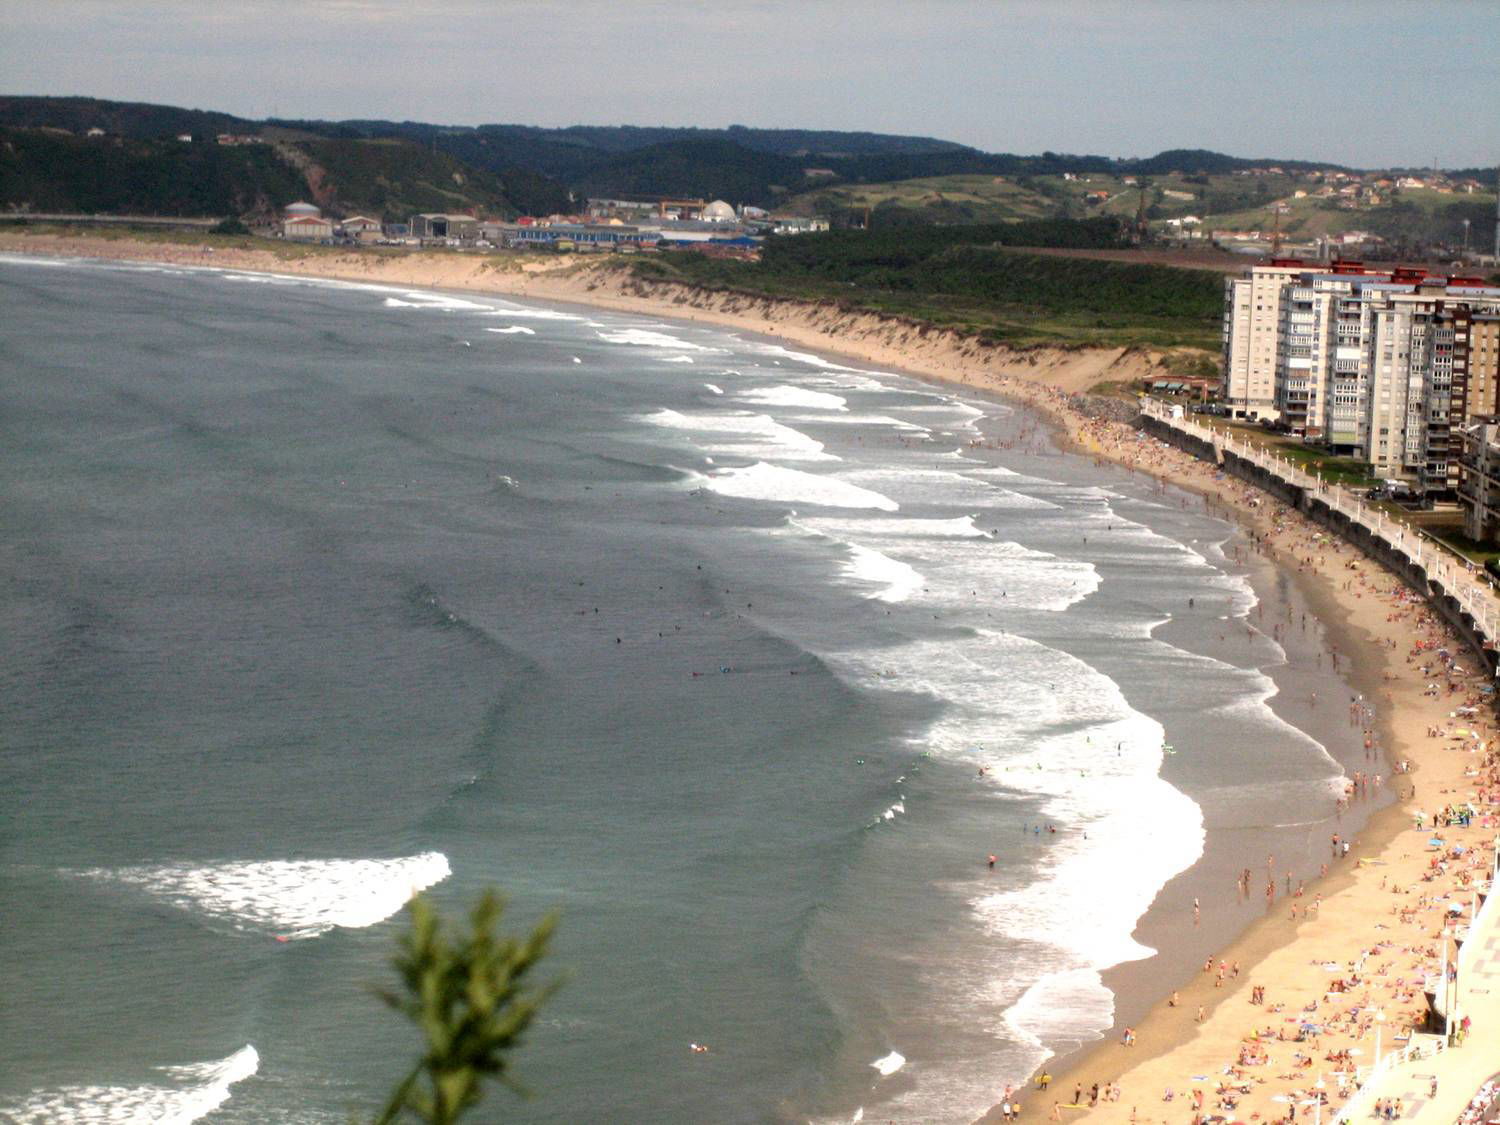 Vídeo sobre generación de corrientes de resaca. Playa de Salinas, Castrillón, Asturias.